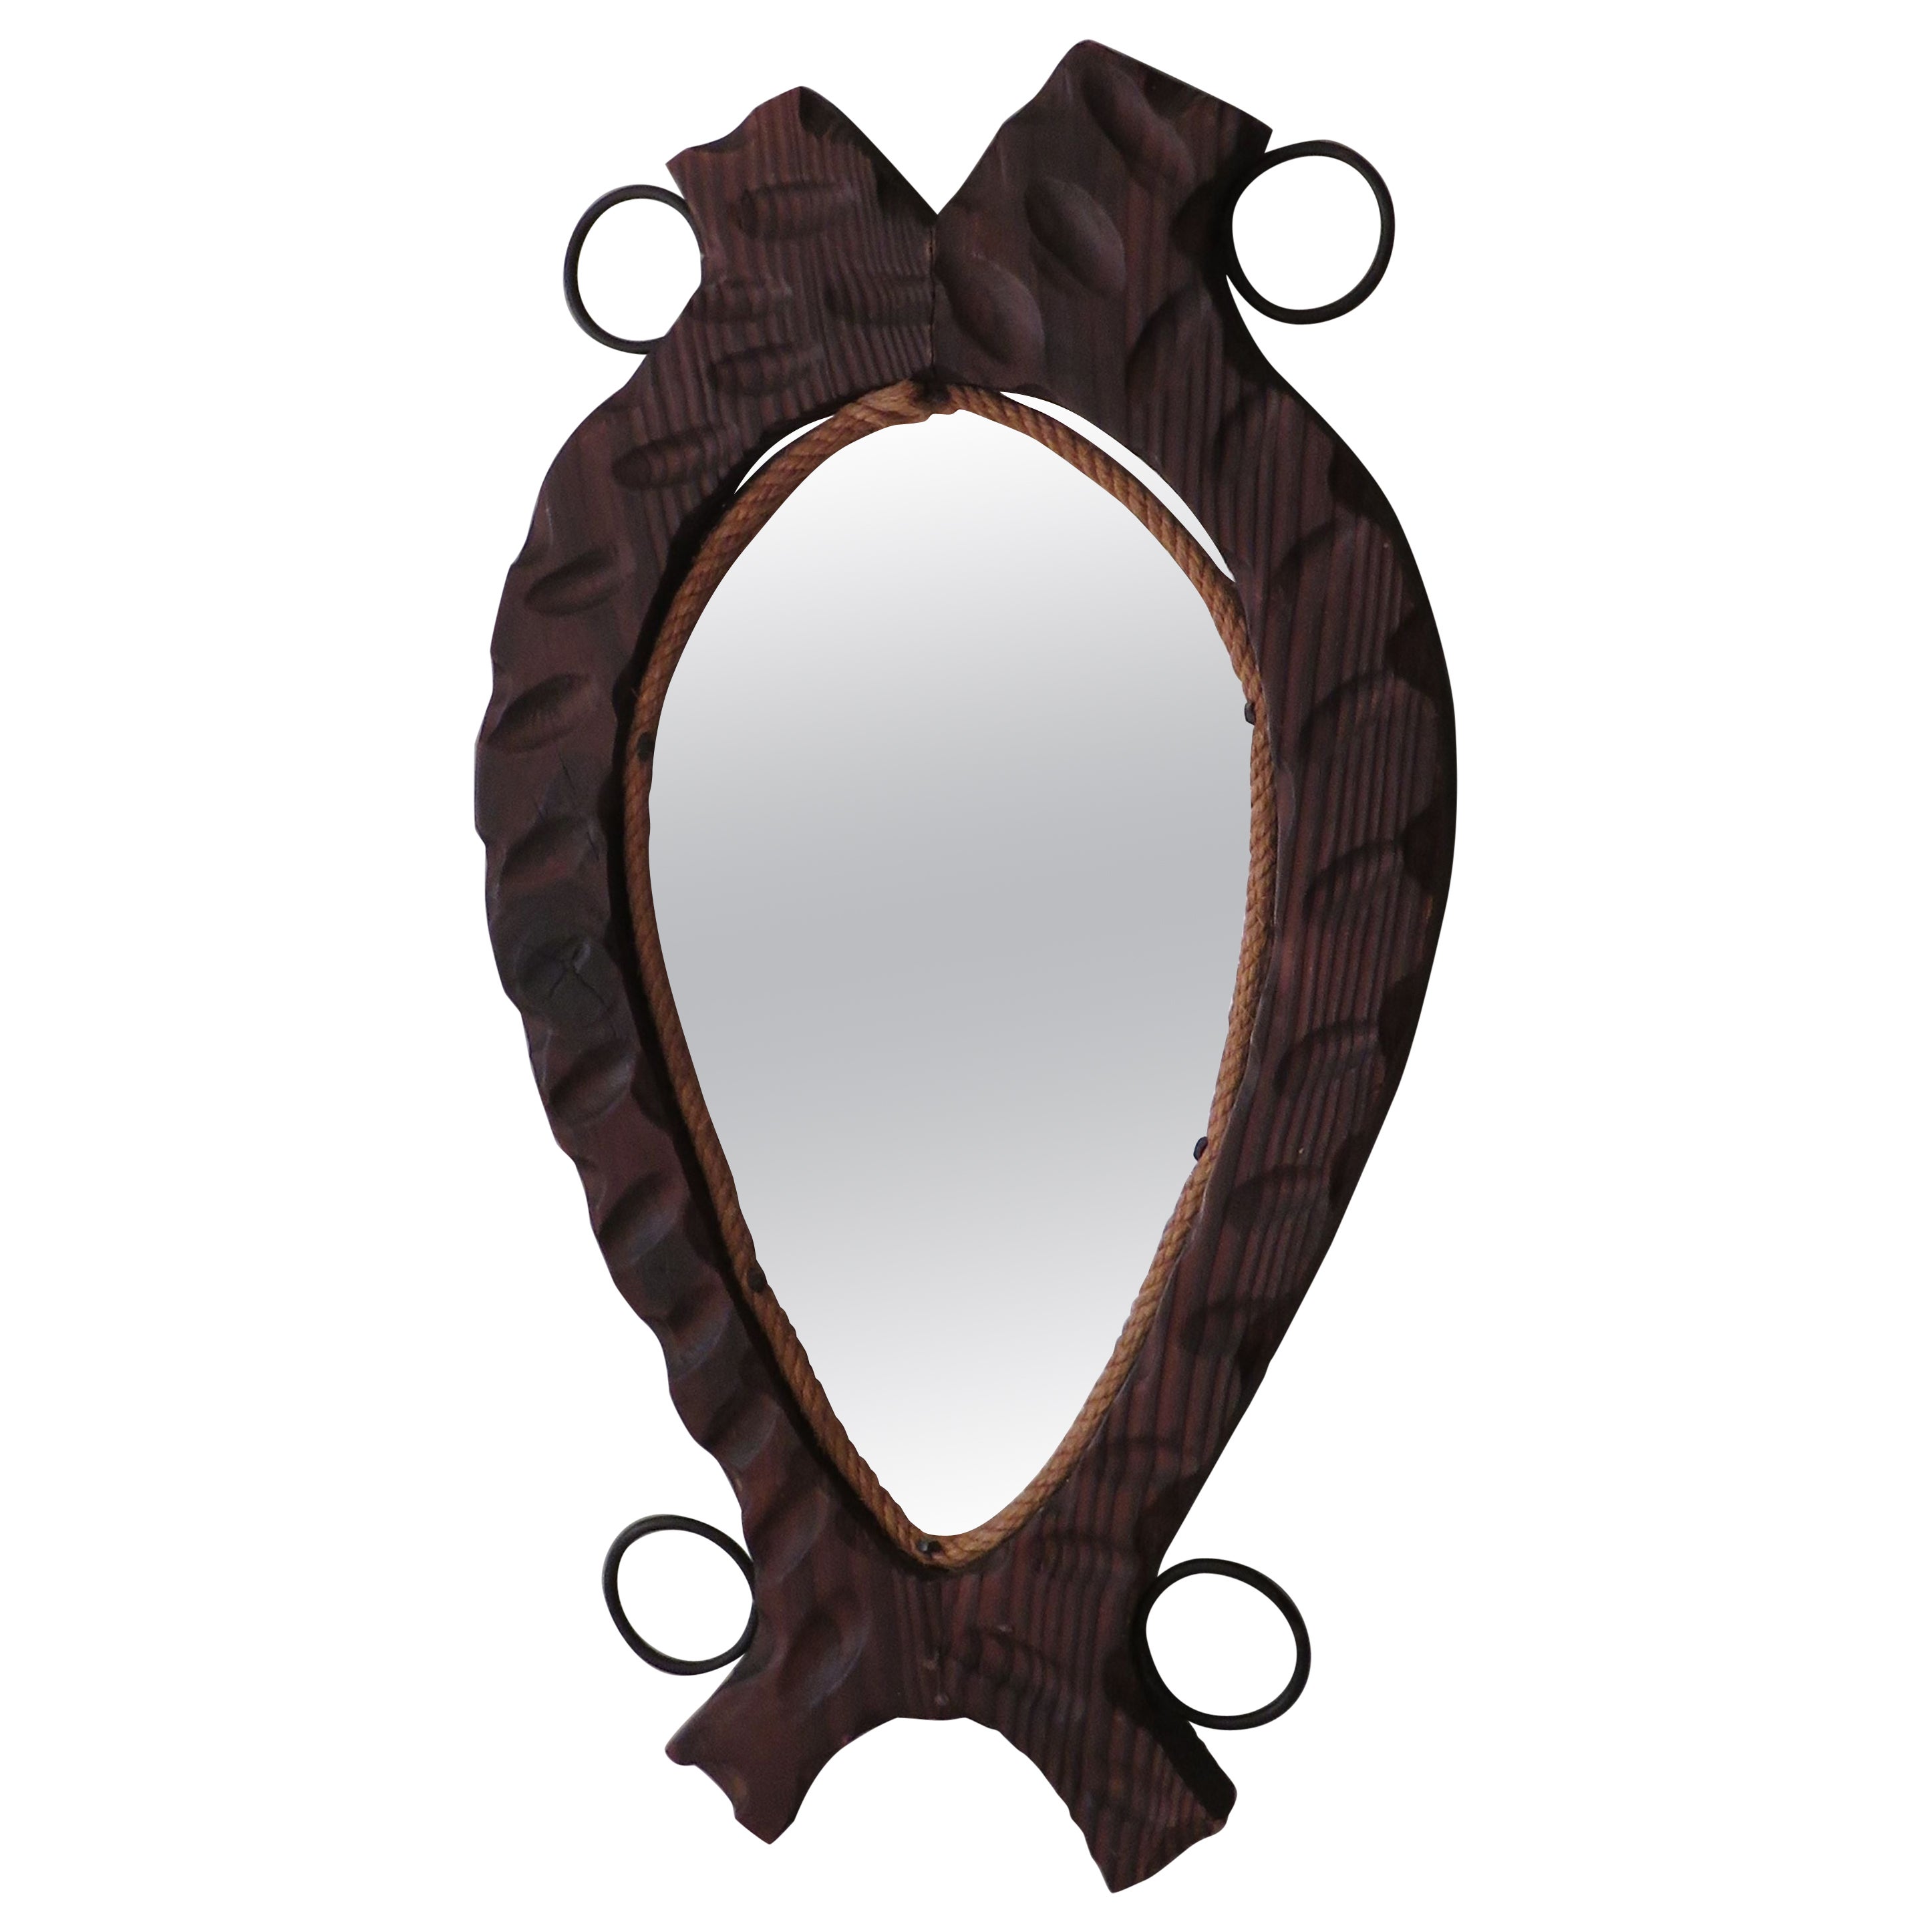 Brutalist Spanish mirror with dark wood frame, 1960s